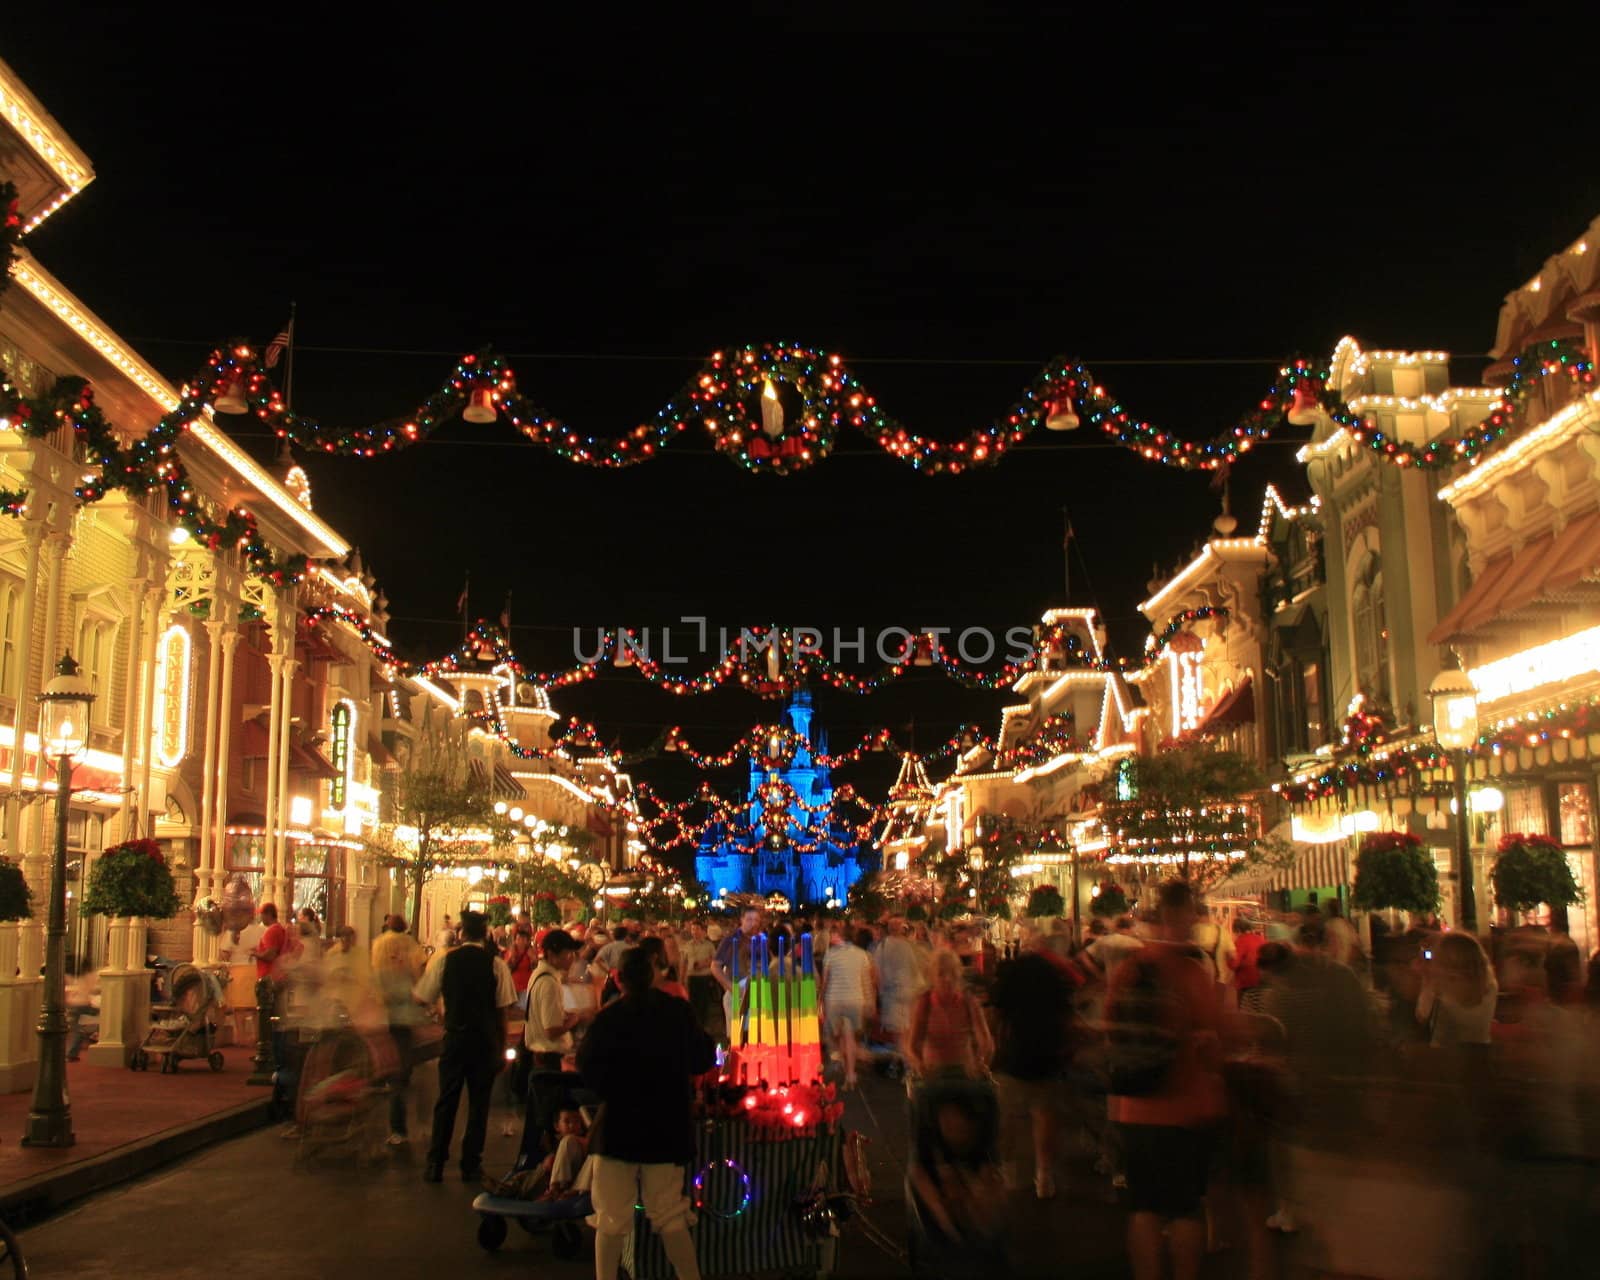 Magic Kingdom Christmas Lights by quackersnaps